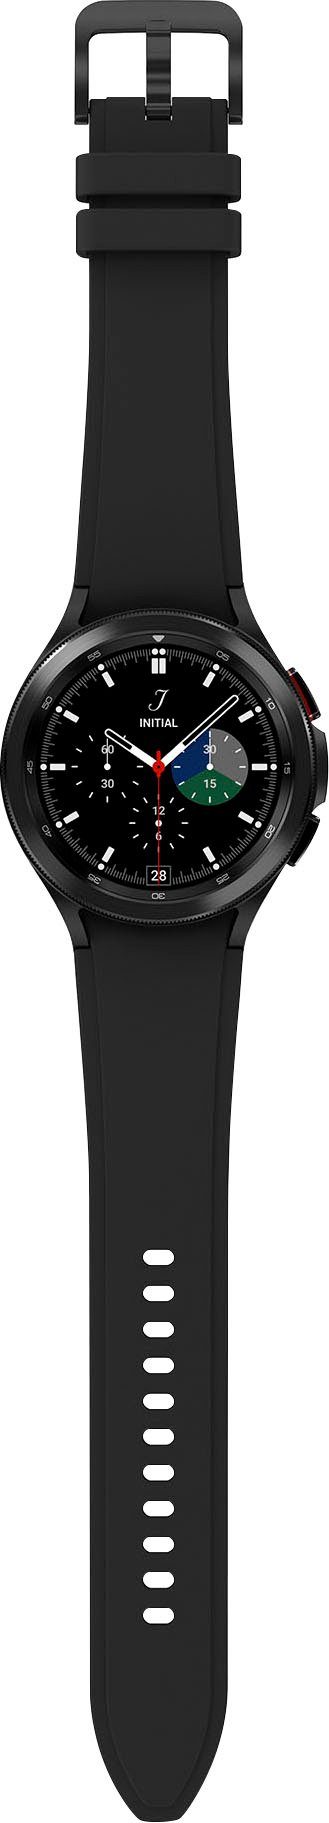 schwarz Uhr, OS Watch Tracker, Galaxy cm/1,4 by 46mm (3,46 LTE Zoll, classic | Google), Wear Smartwatch Fitness Gesundheitsfunktionen Fitness 4 schwarz Samsung